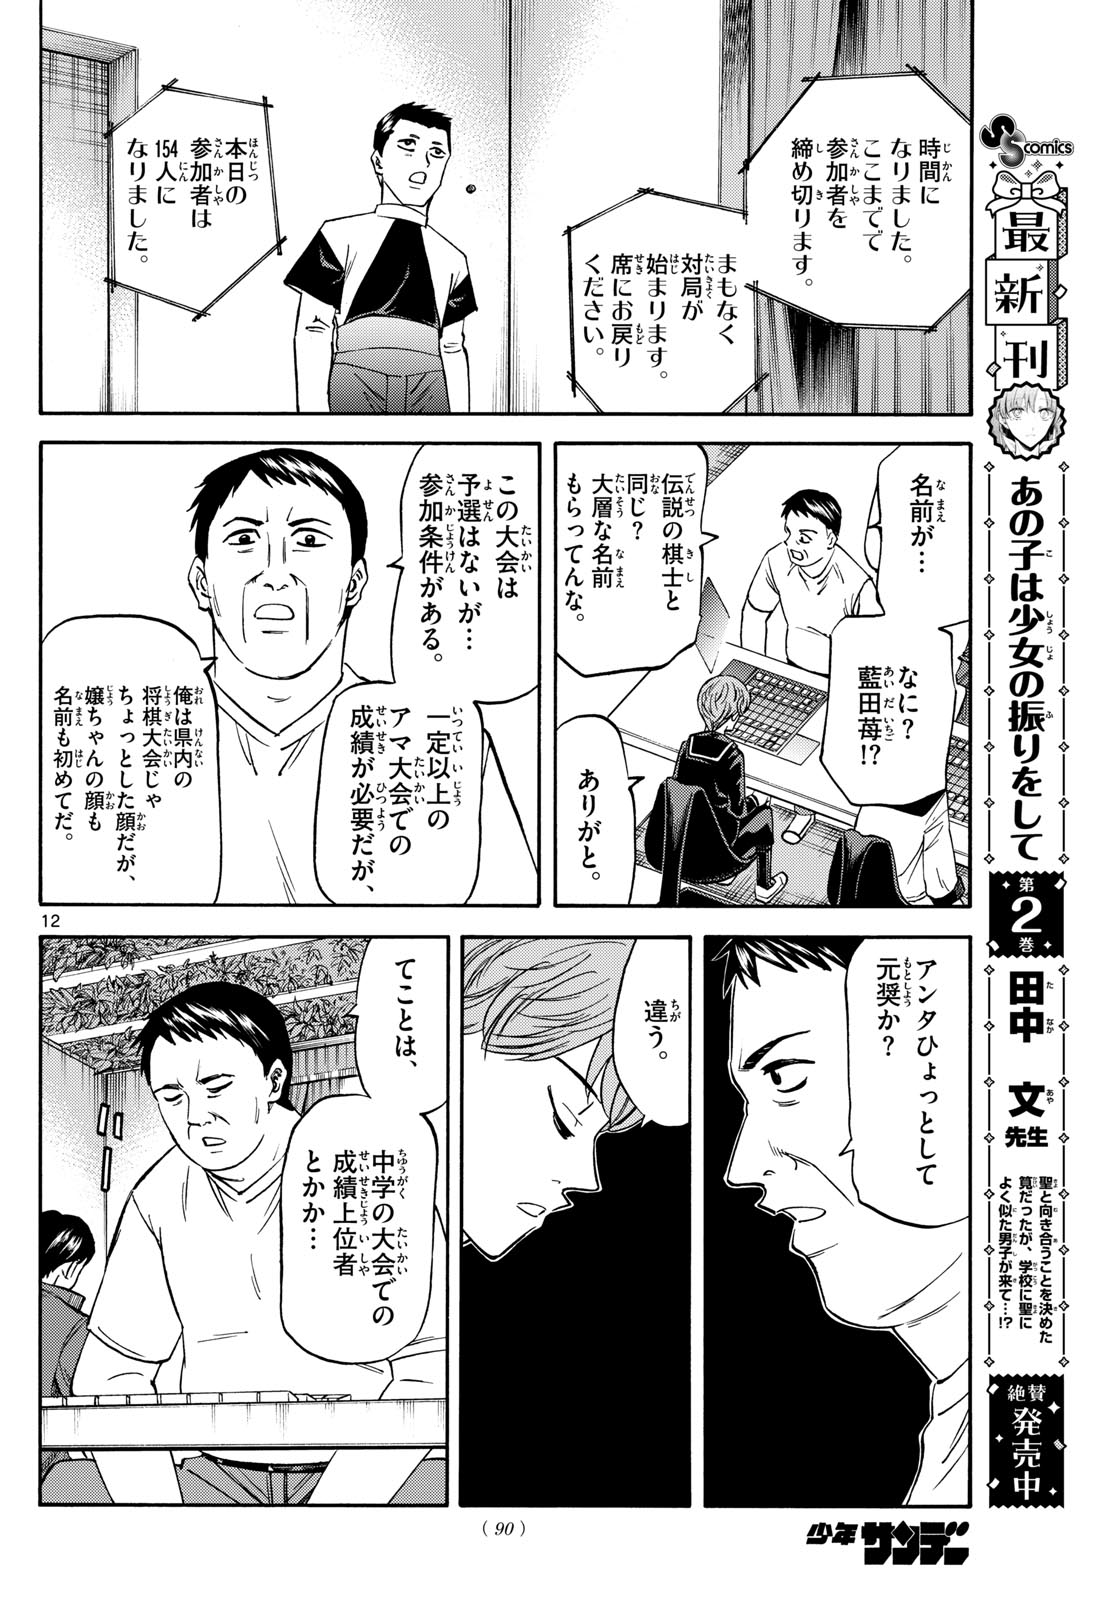 Tatsu to Ichigo - Chapter 185 - Page 12